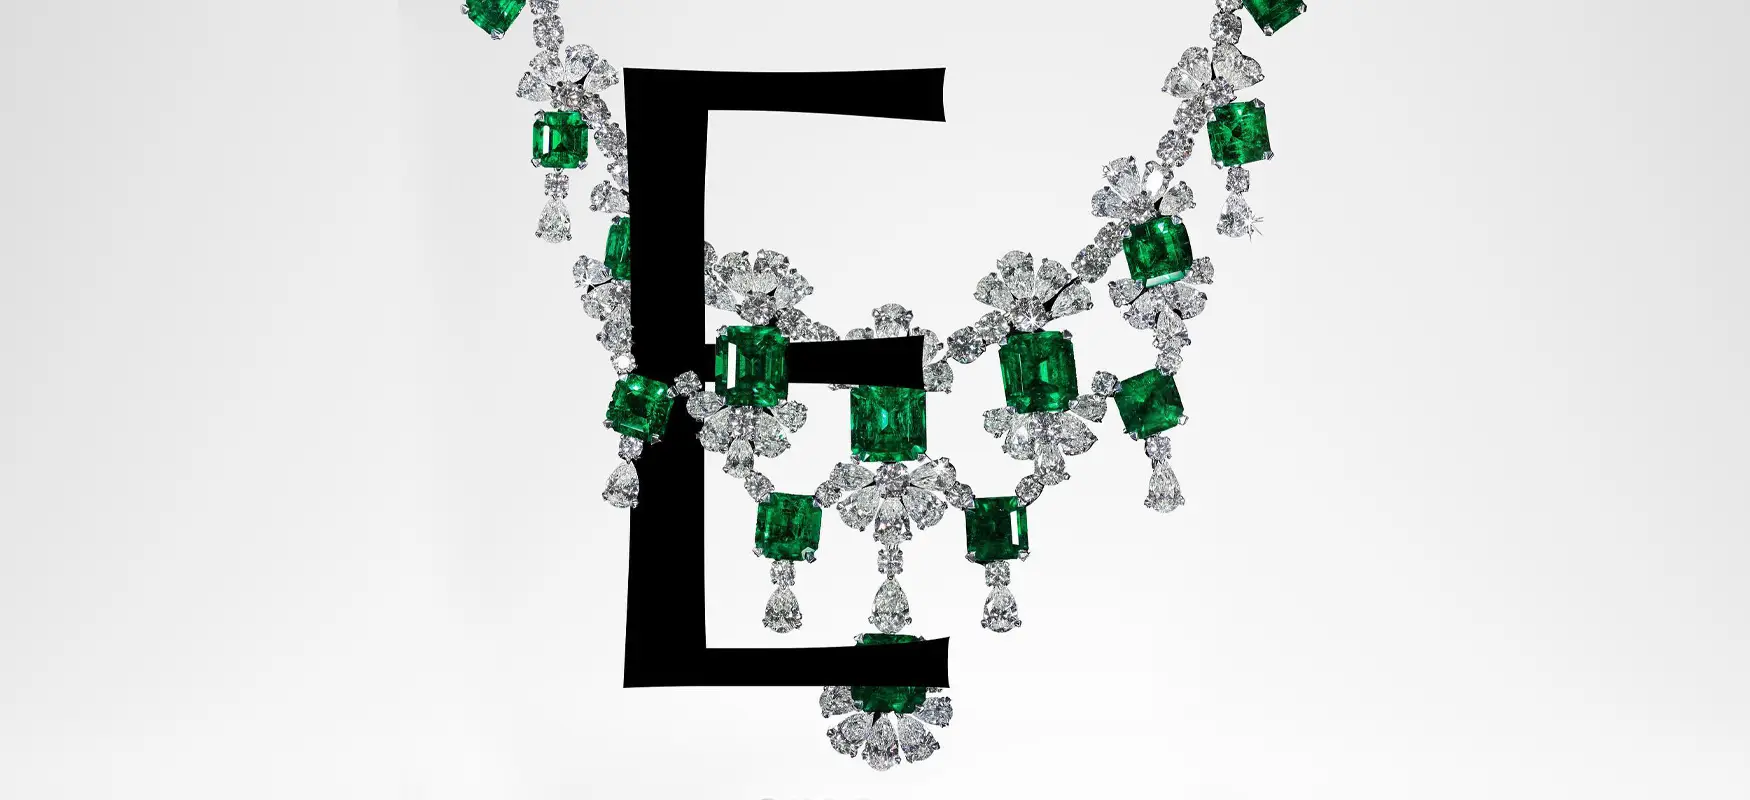 E for Emerald